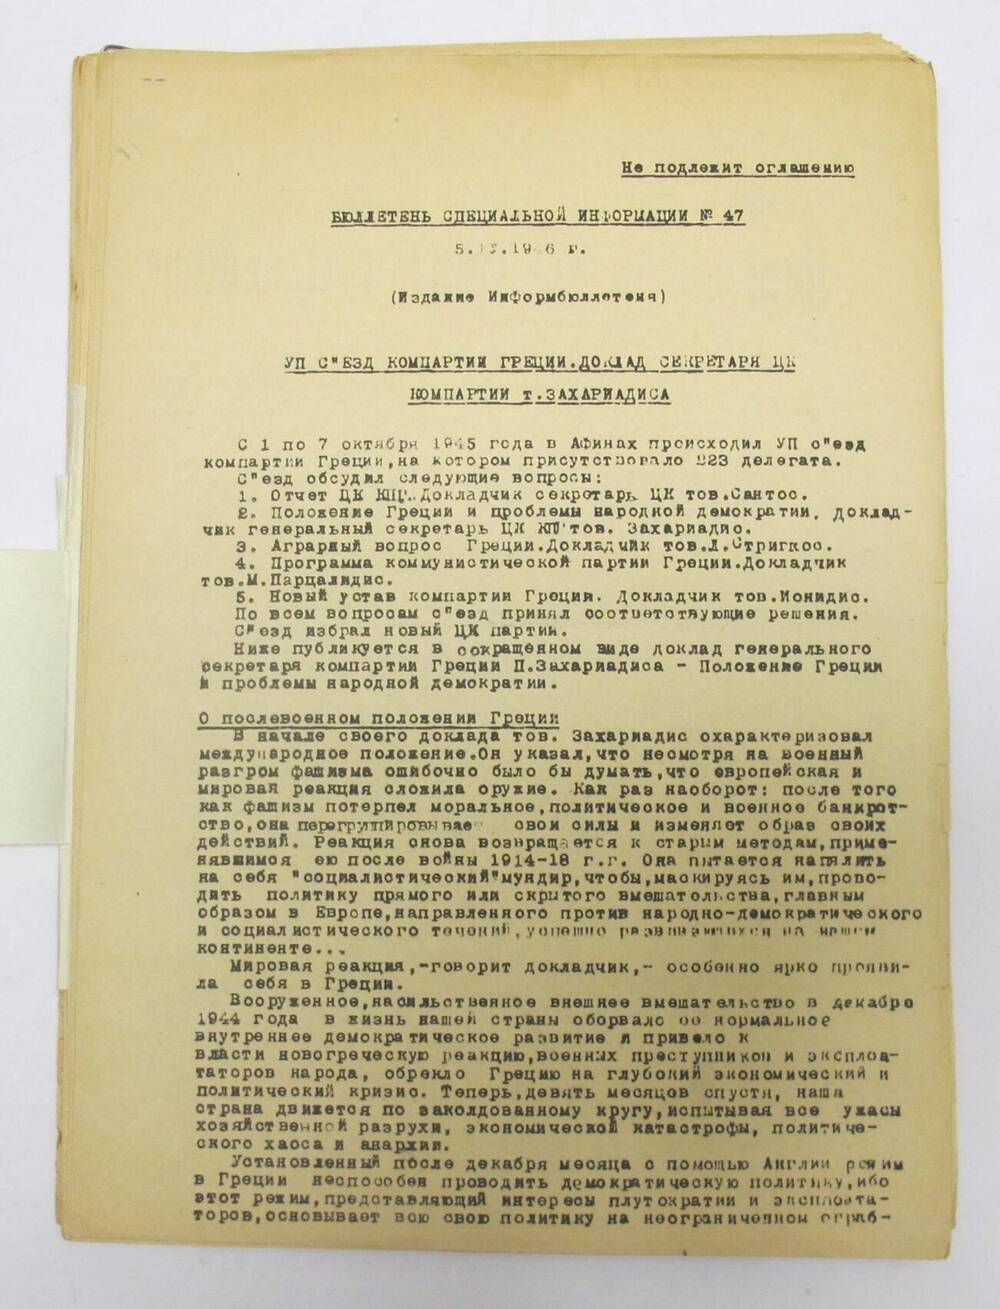 Бюллетень специальной информации N 47, 05.04.1946